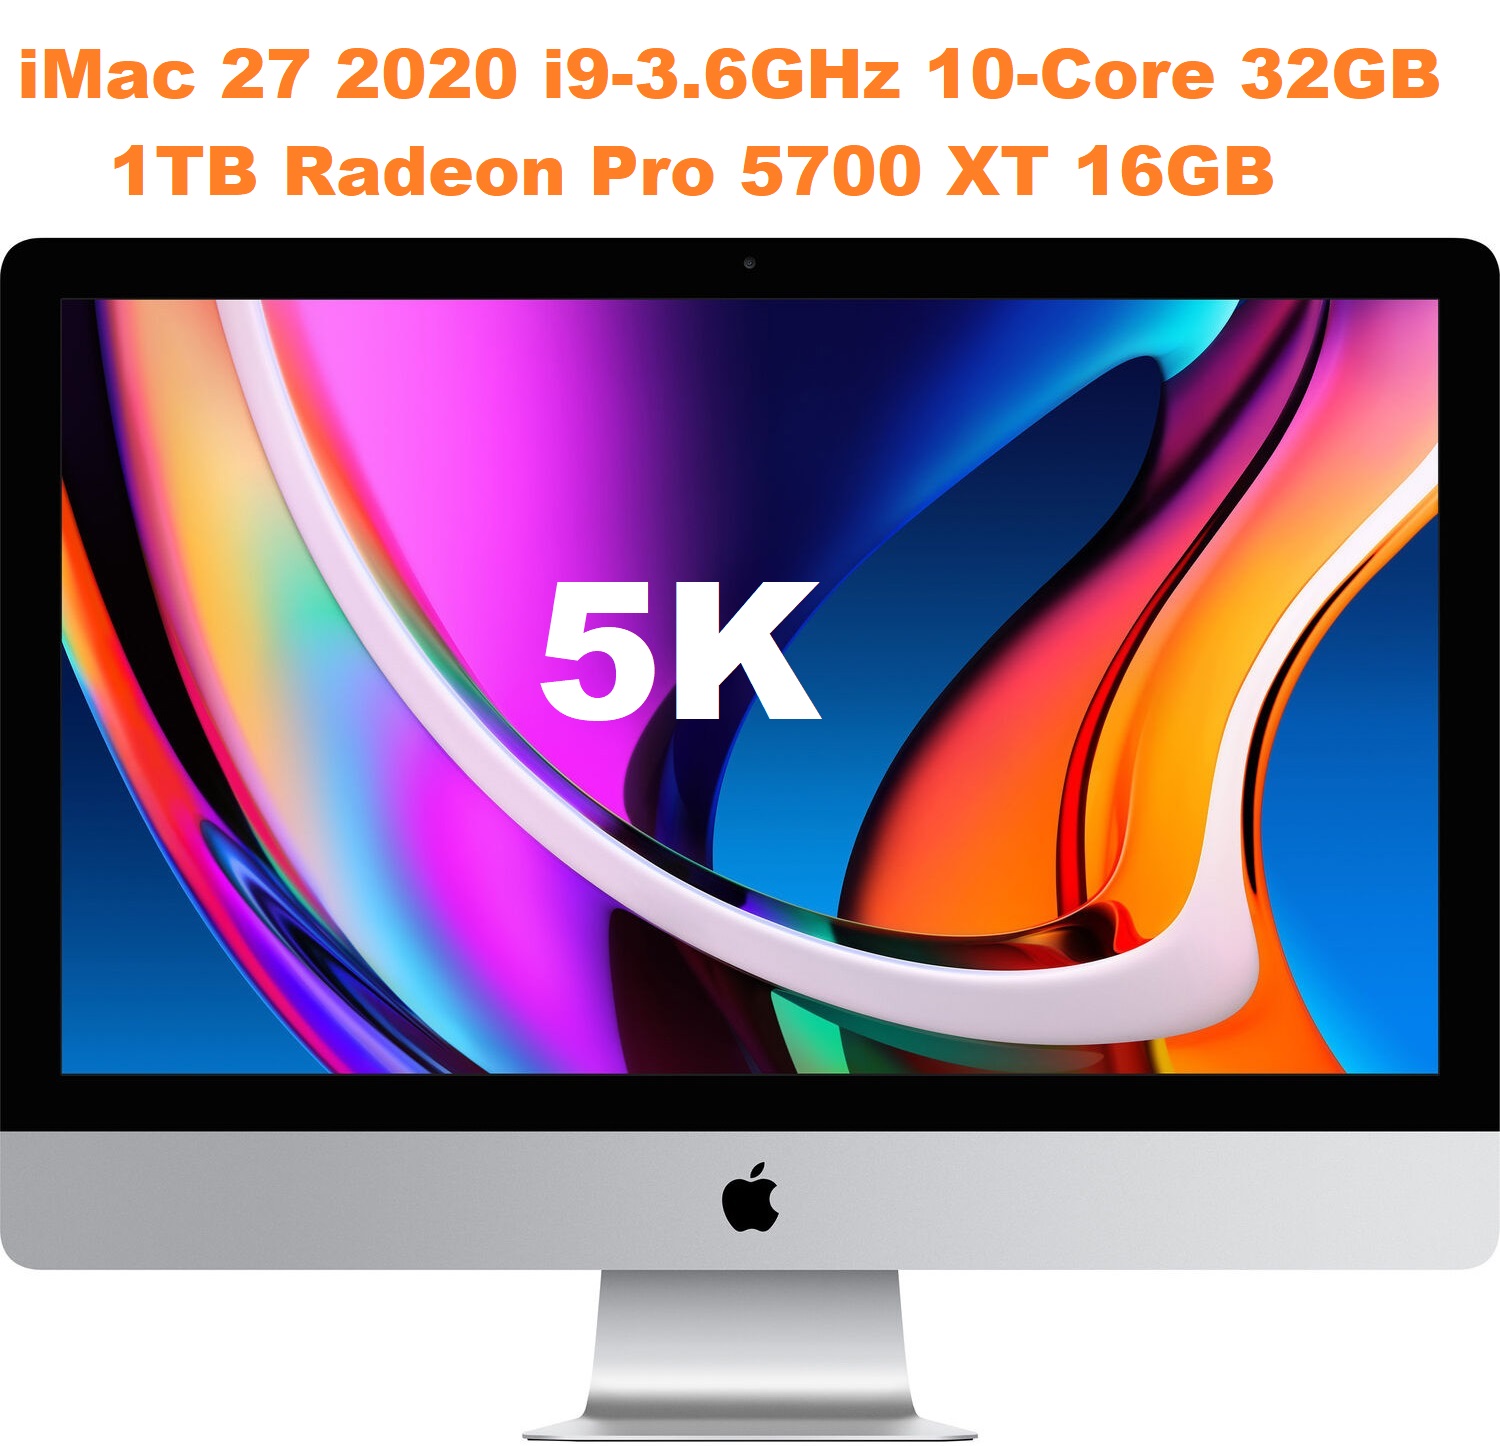 iMac 27 2020 i9-3.6GHz 10-Core 32GB 1TB Radeon Pro 5700 XT 16GB